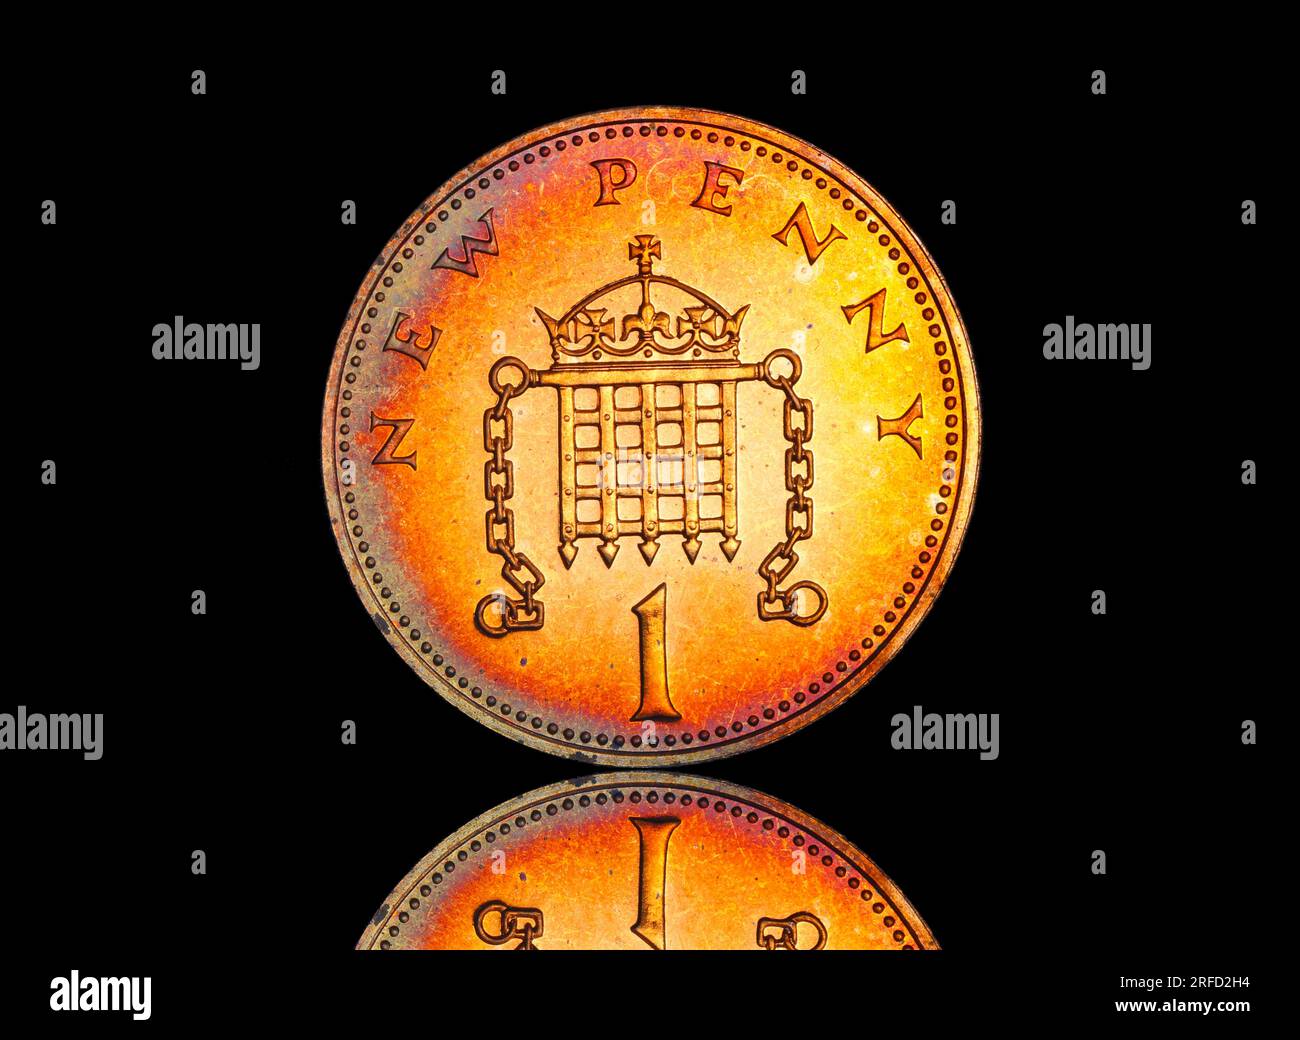 Rovescio di una moneta da 1973 One Pence con una portculla coronata e catene Foto Stock